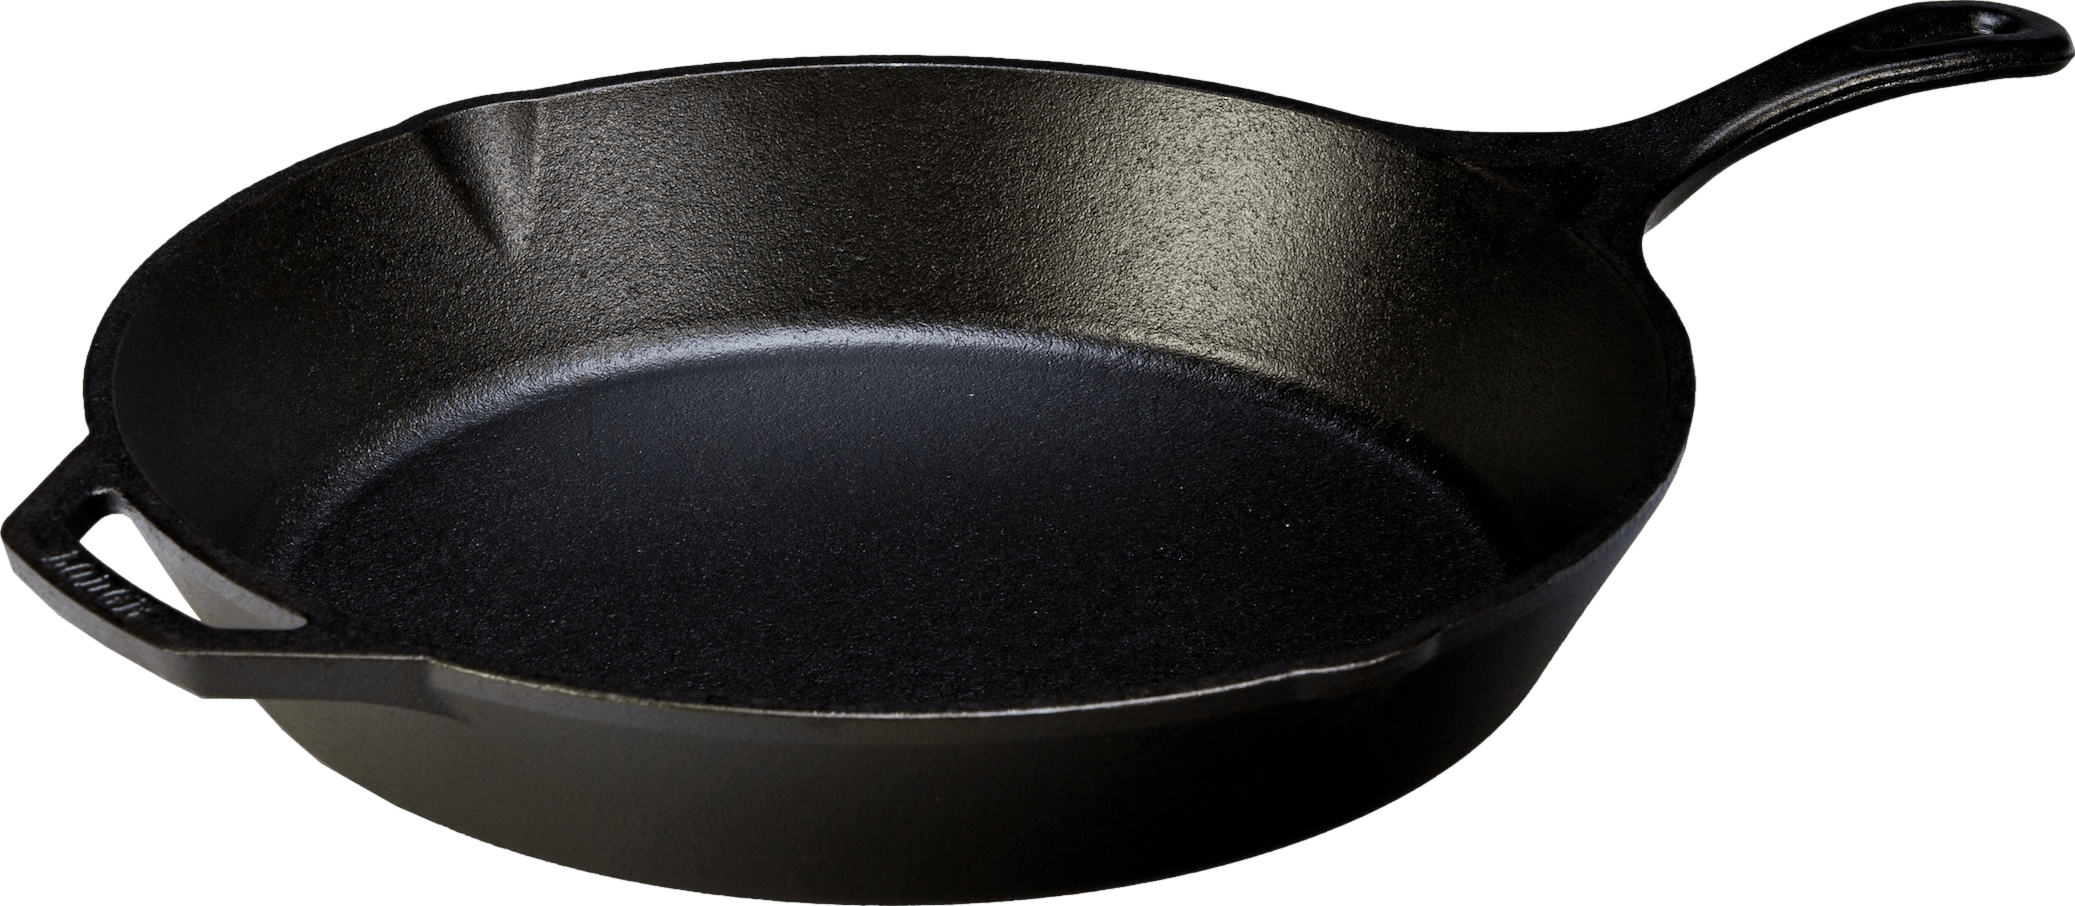 Lodge Carbon Steel Skillet, Pre-Seasoned, 15-Inch,Black